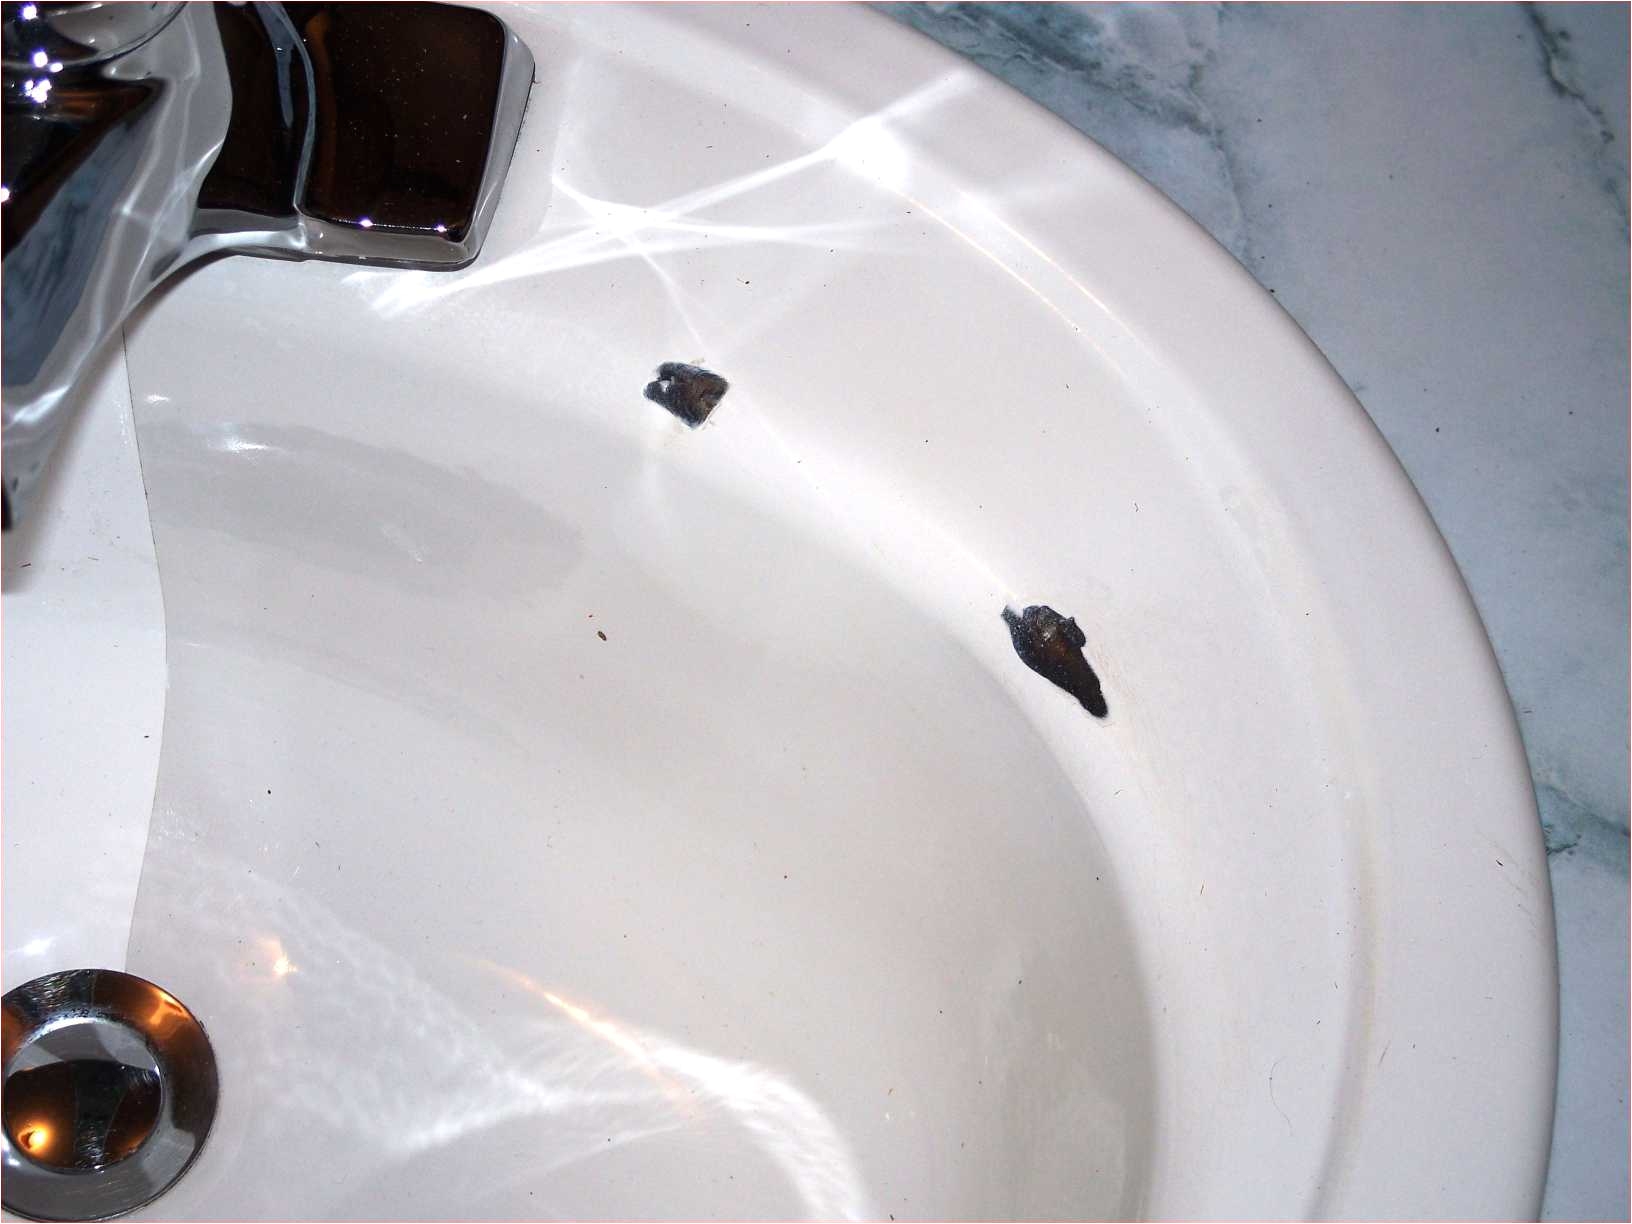 does bathtub refinishing last best of tub repair luxury h sink enamel chip repair crack scratch repairi 0ddoes bathtub refinishing last most elegant tub